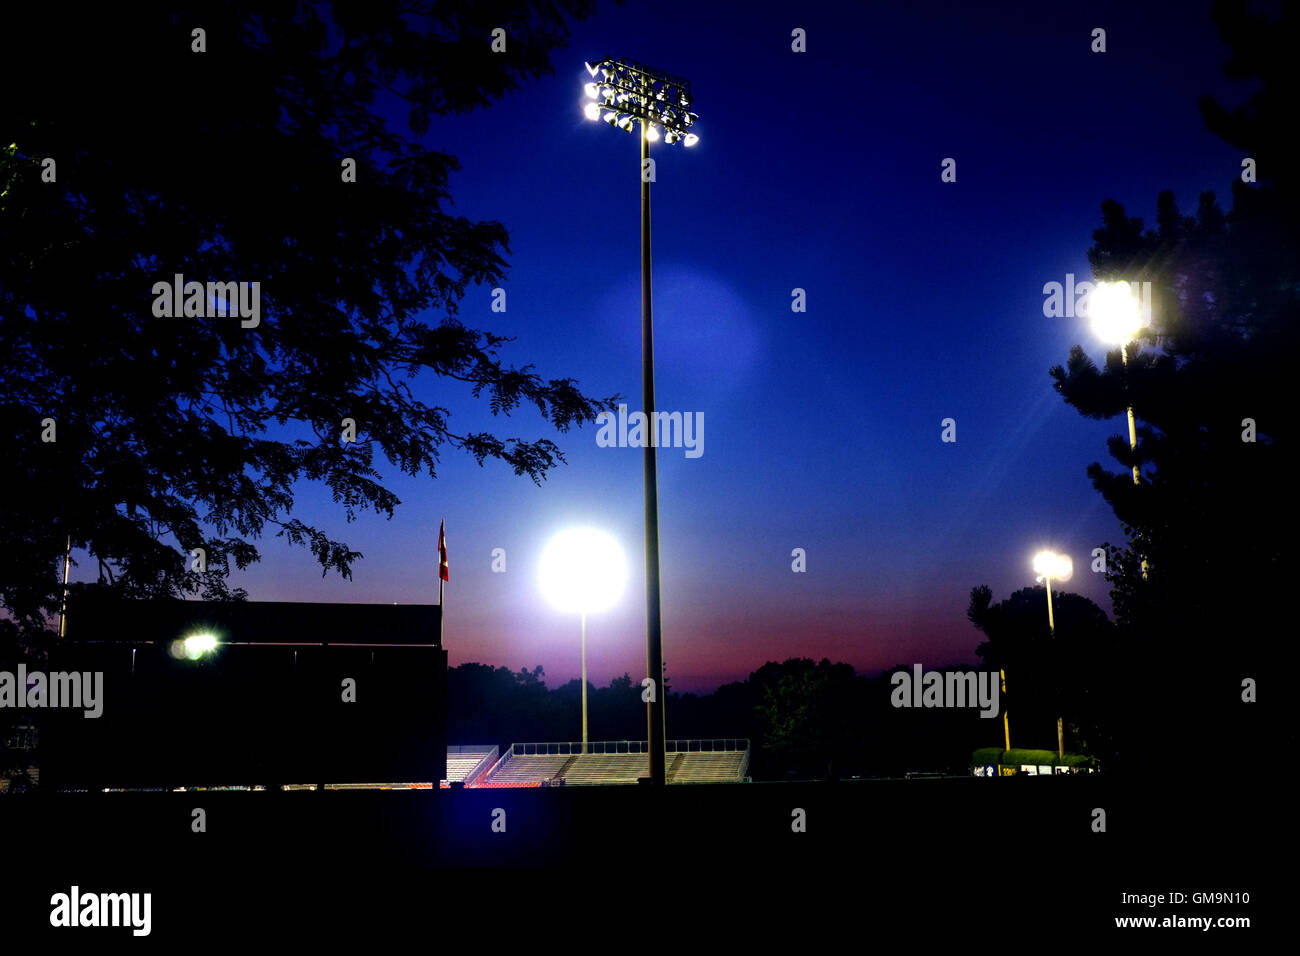 La Labatt Park baseball stadium illuminata di notte nella città canadese di London, Ontario. Foto Stock